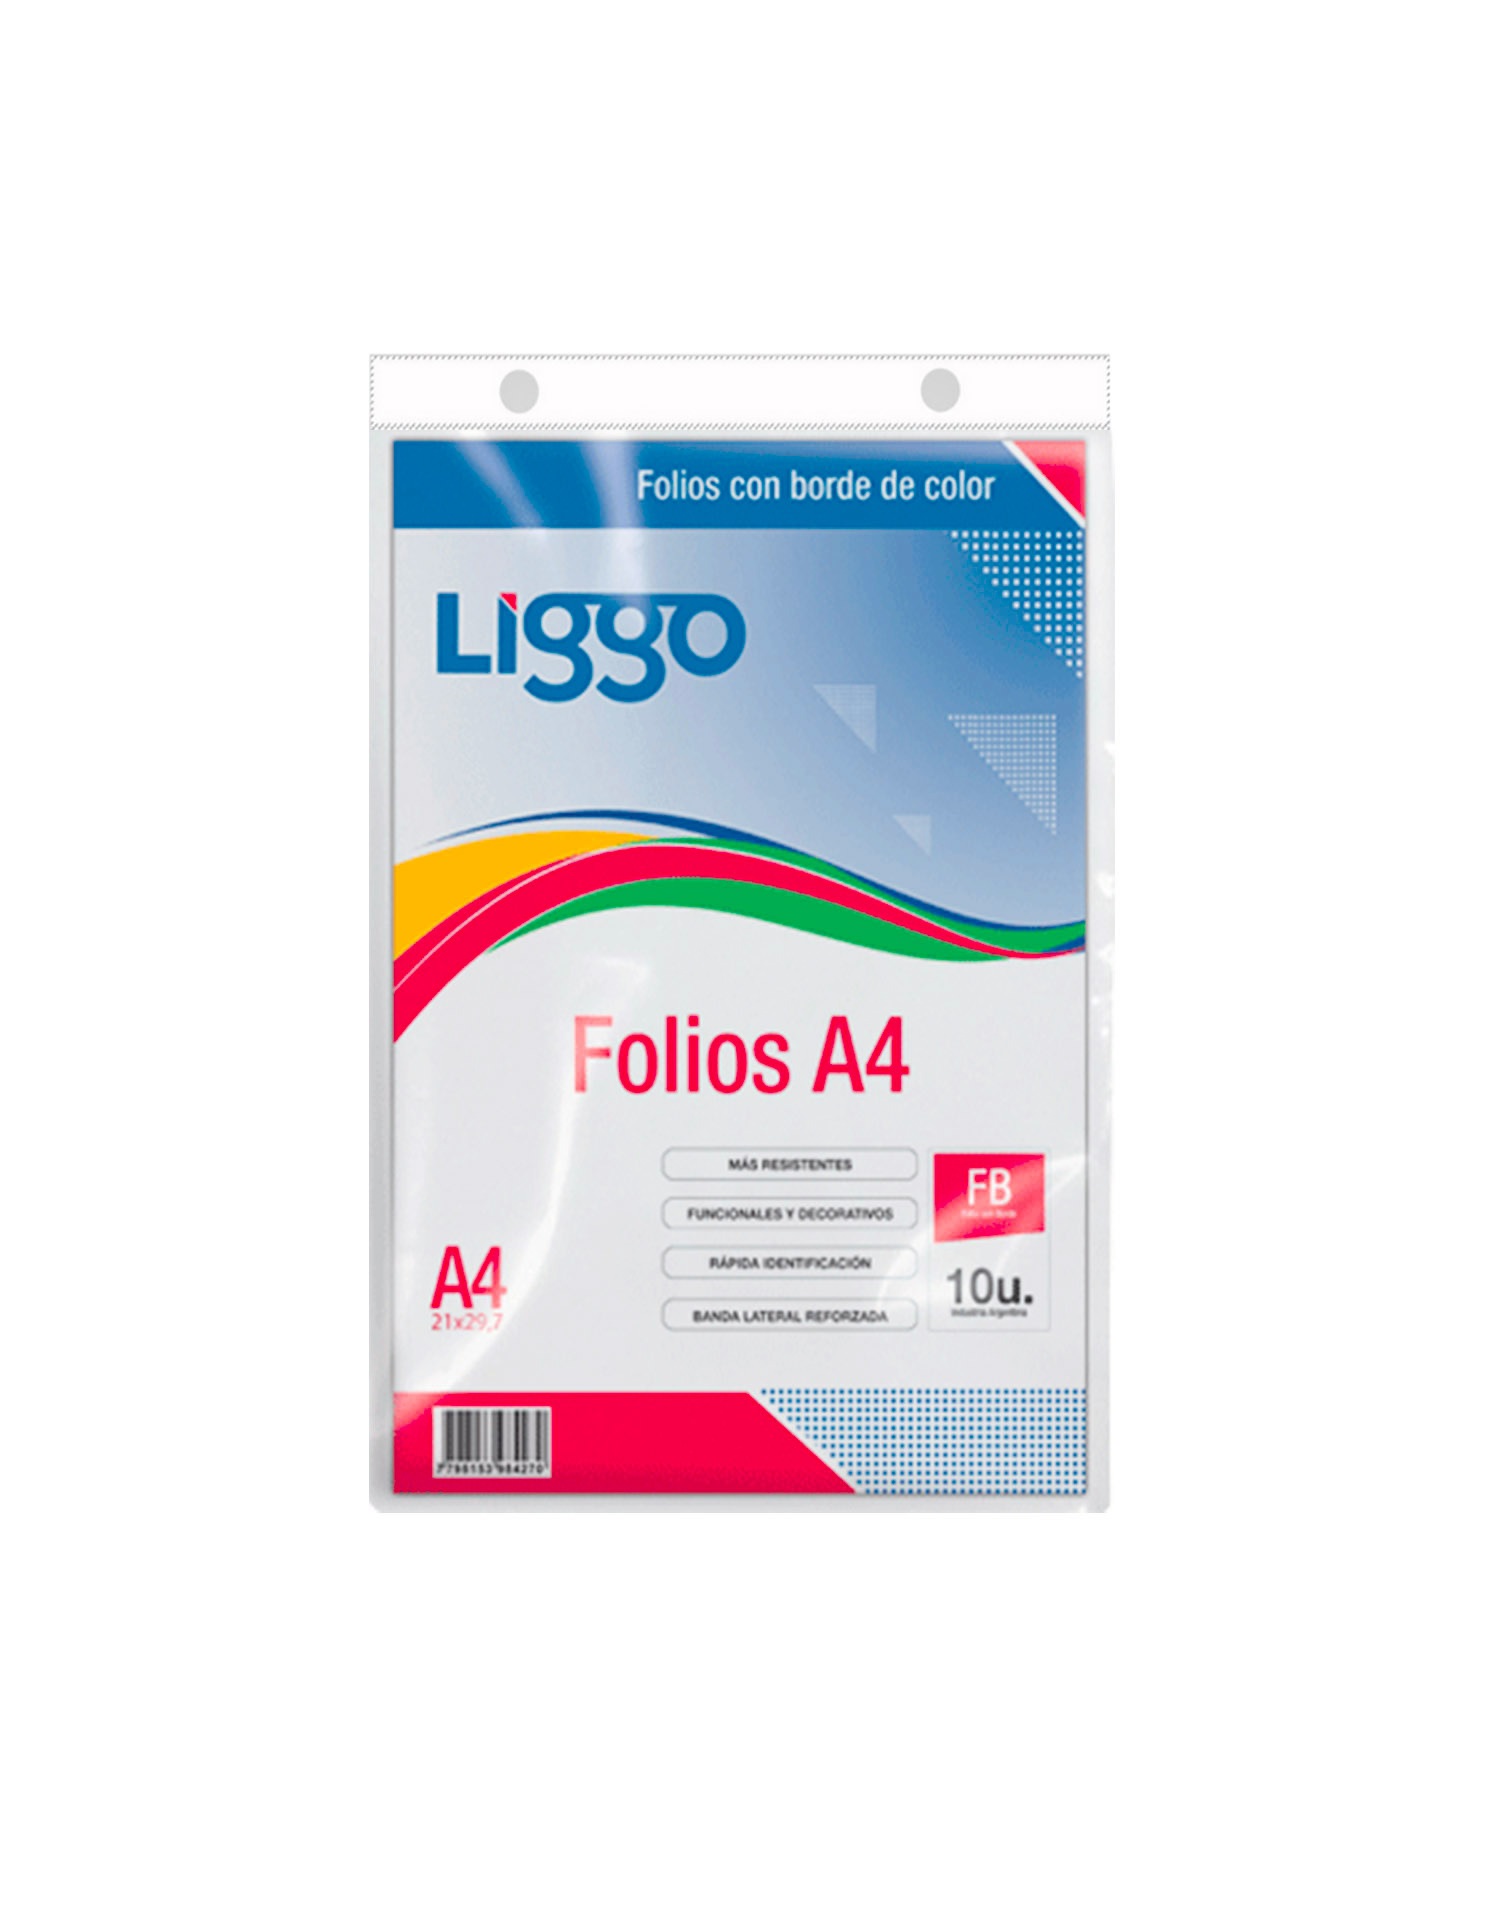 FOLIO LIGGO A4 PLANO BORDE COLOR X 10U. (370-8100)